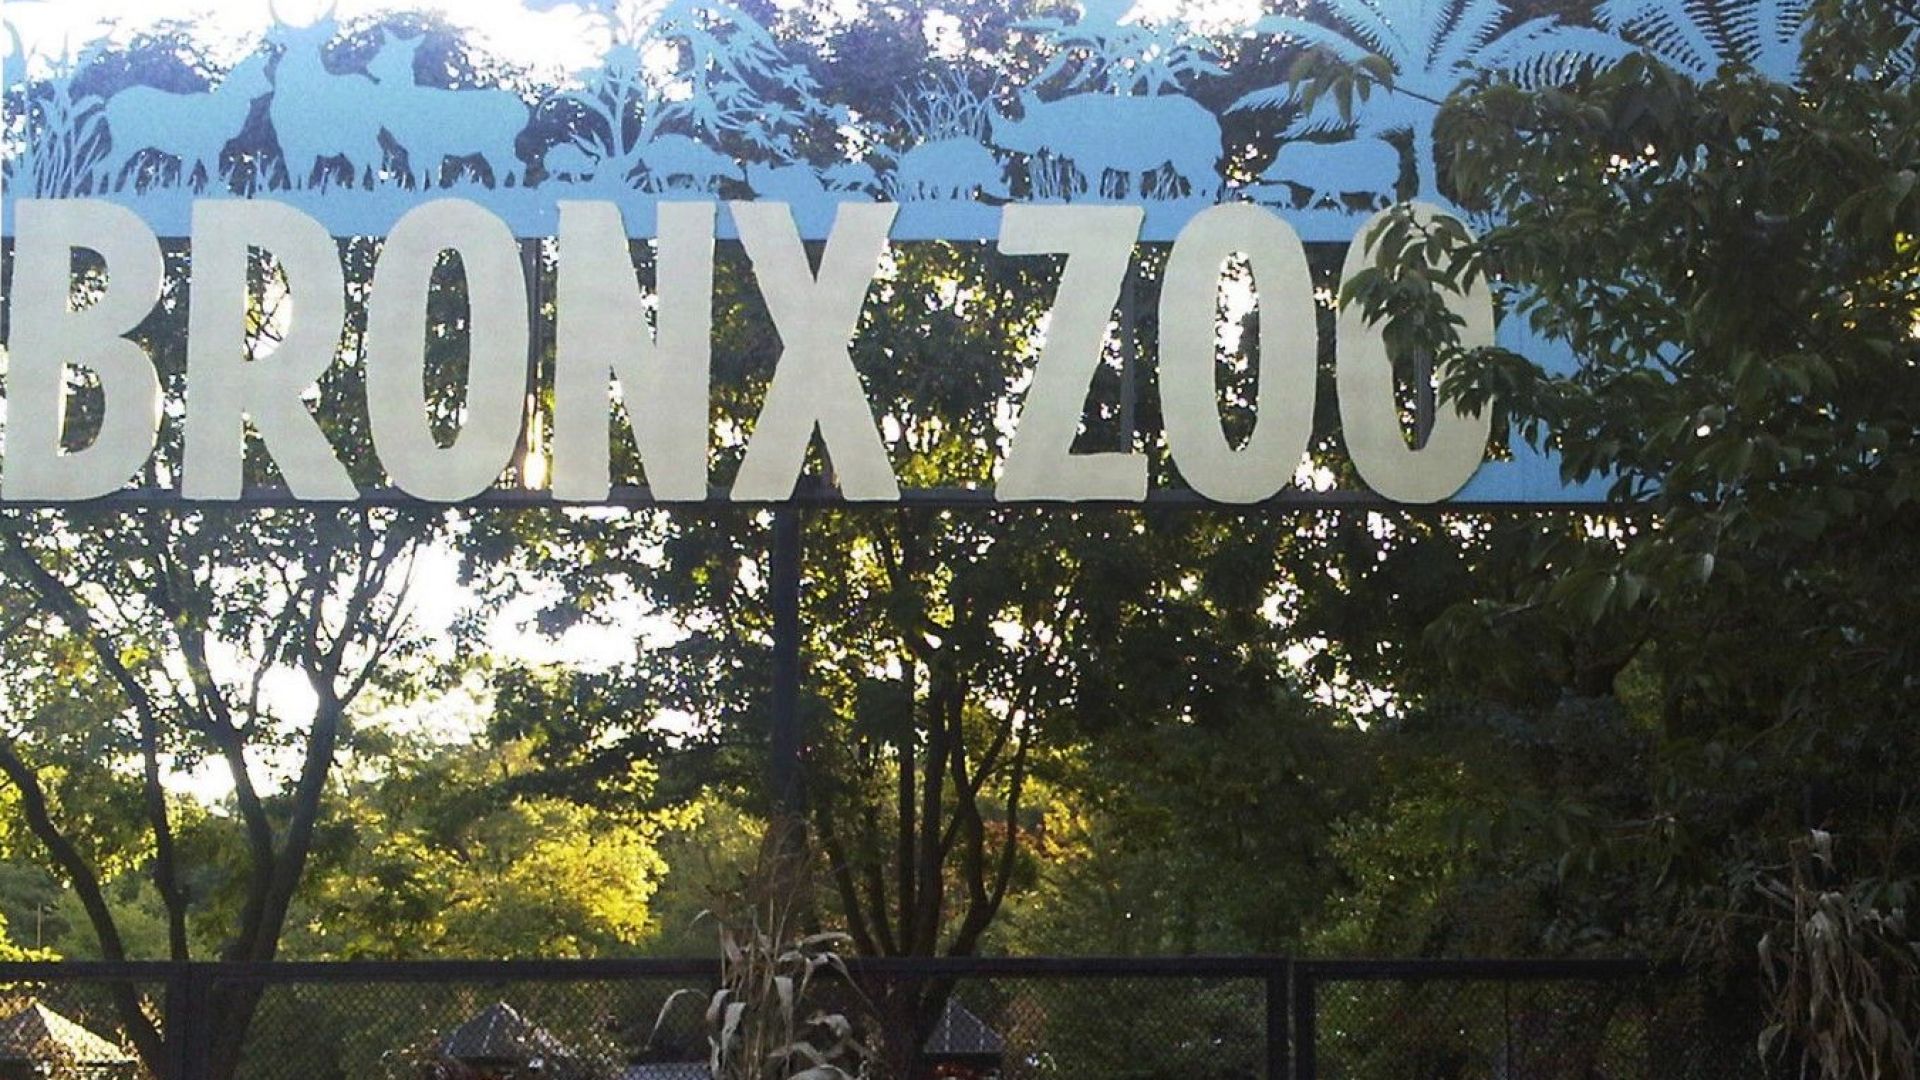 Тигър в Зоологическата градина на Бронкс в Ню Йорк даде